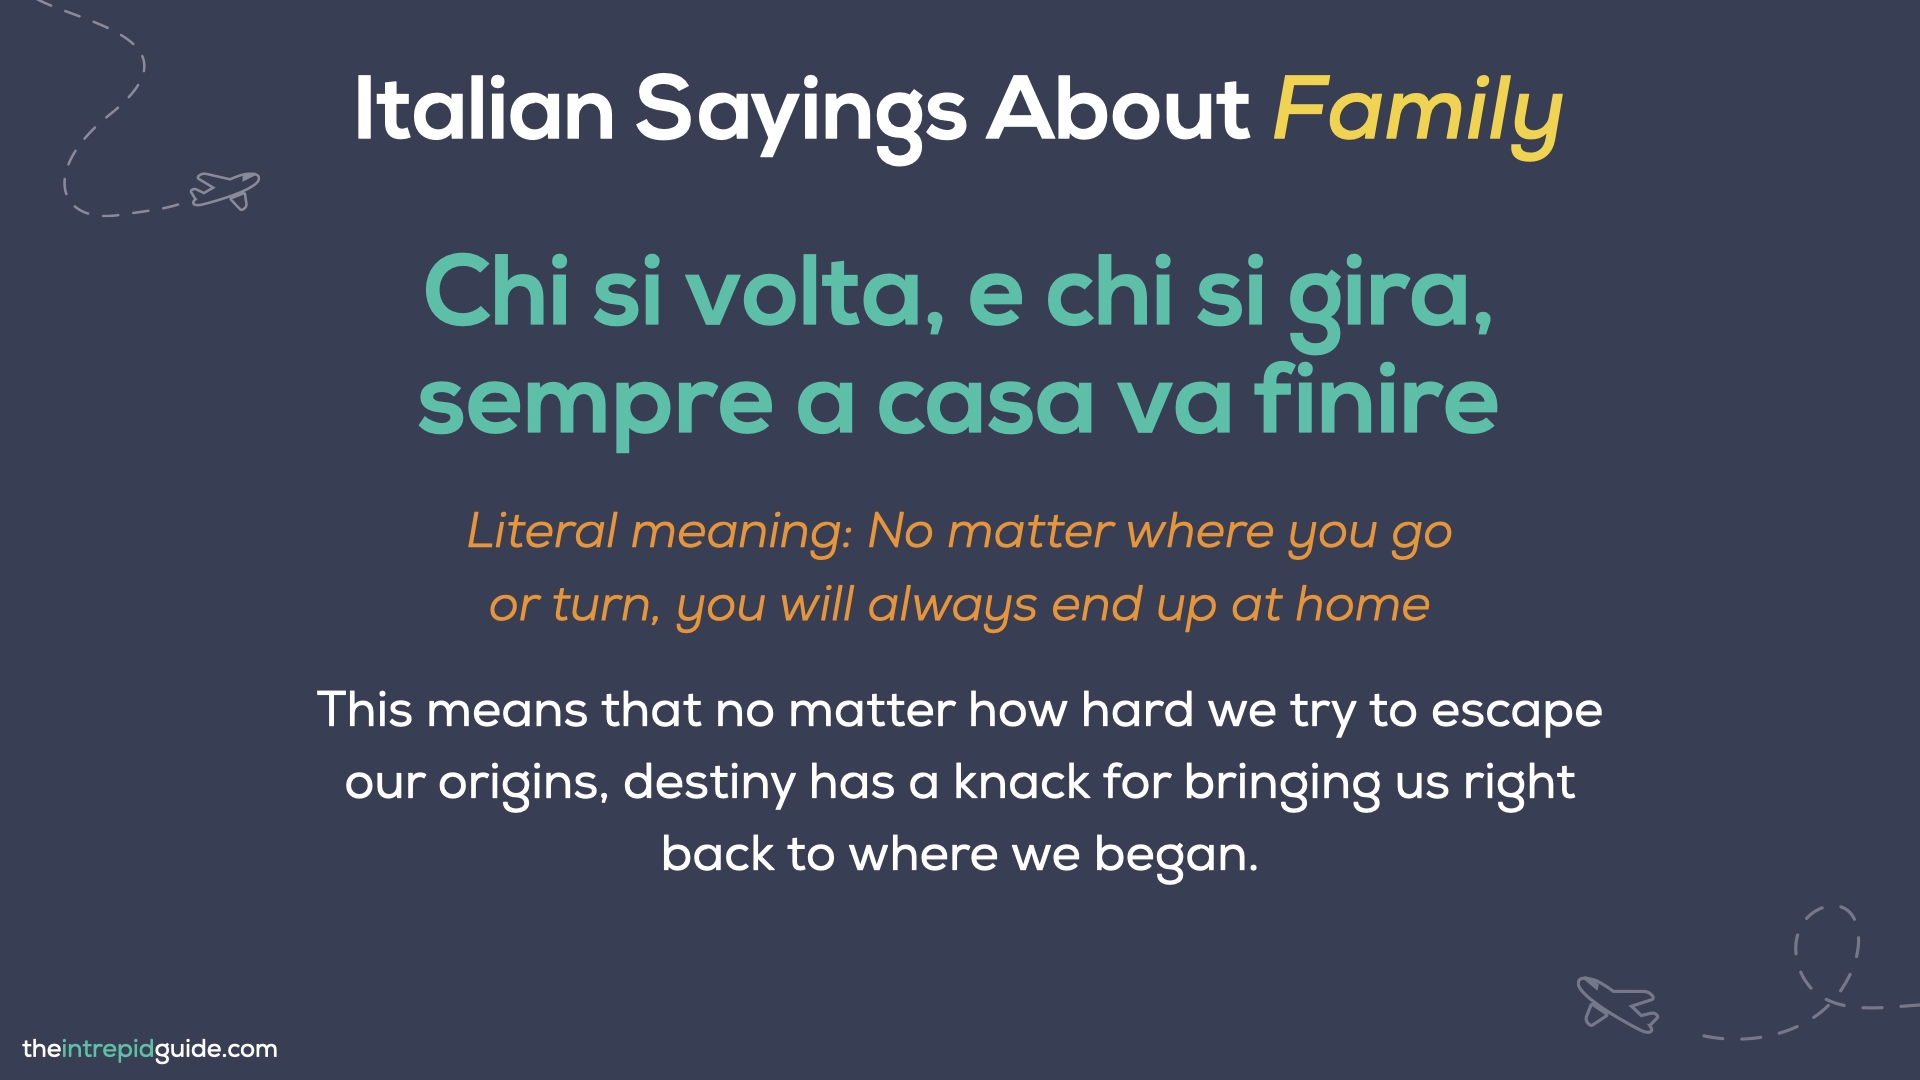 Italian Sayings About Life - Chi si volta, e chi si gira, sempre a casa va finire